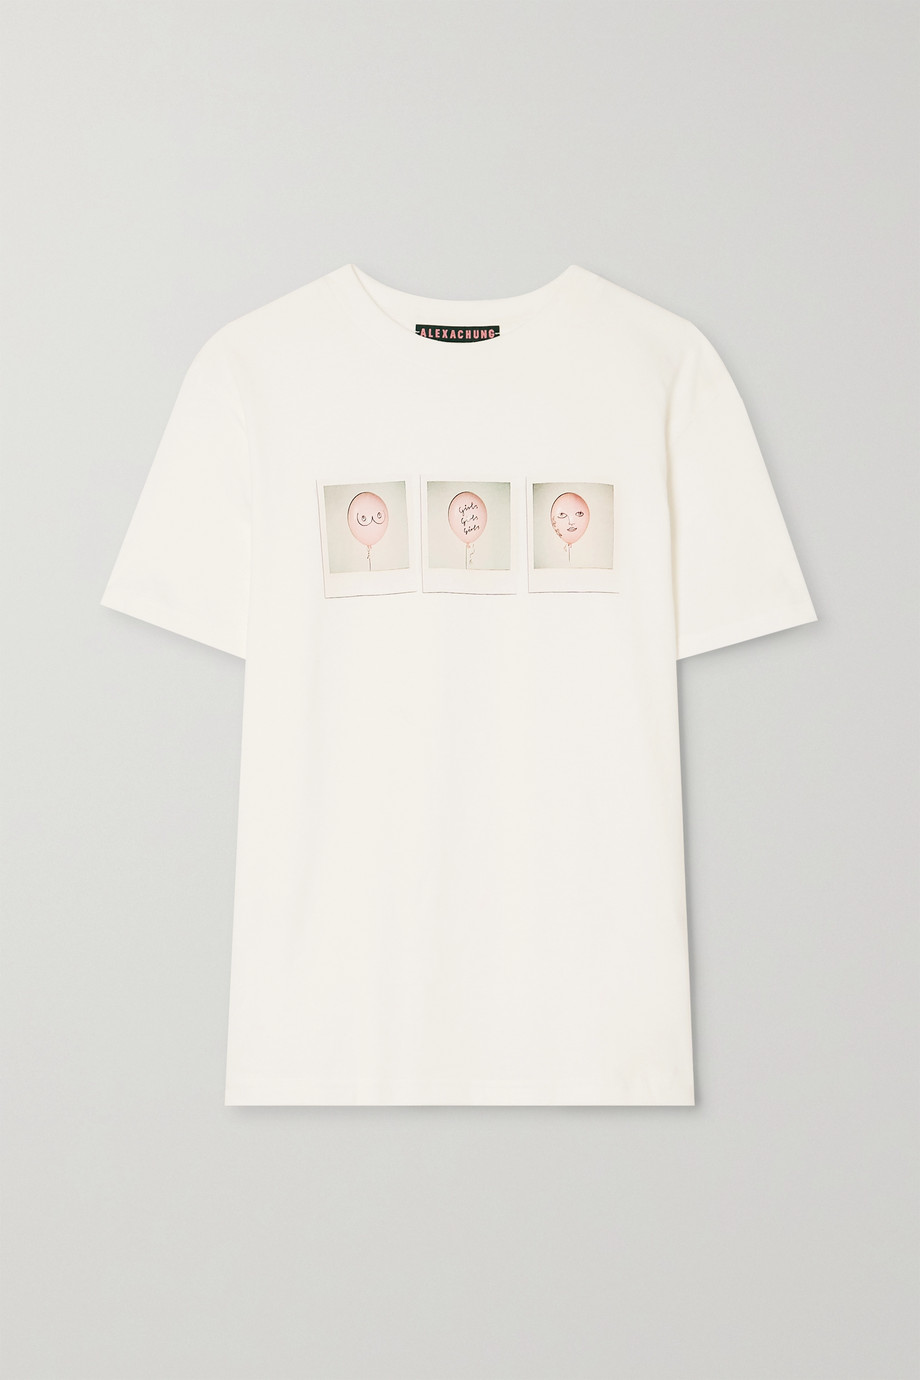 Net-a-Porter x ALEXACHUNG International Women's Day T-shirt 2020.